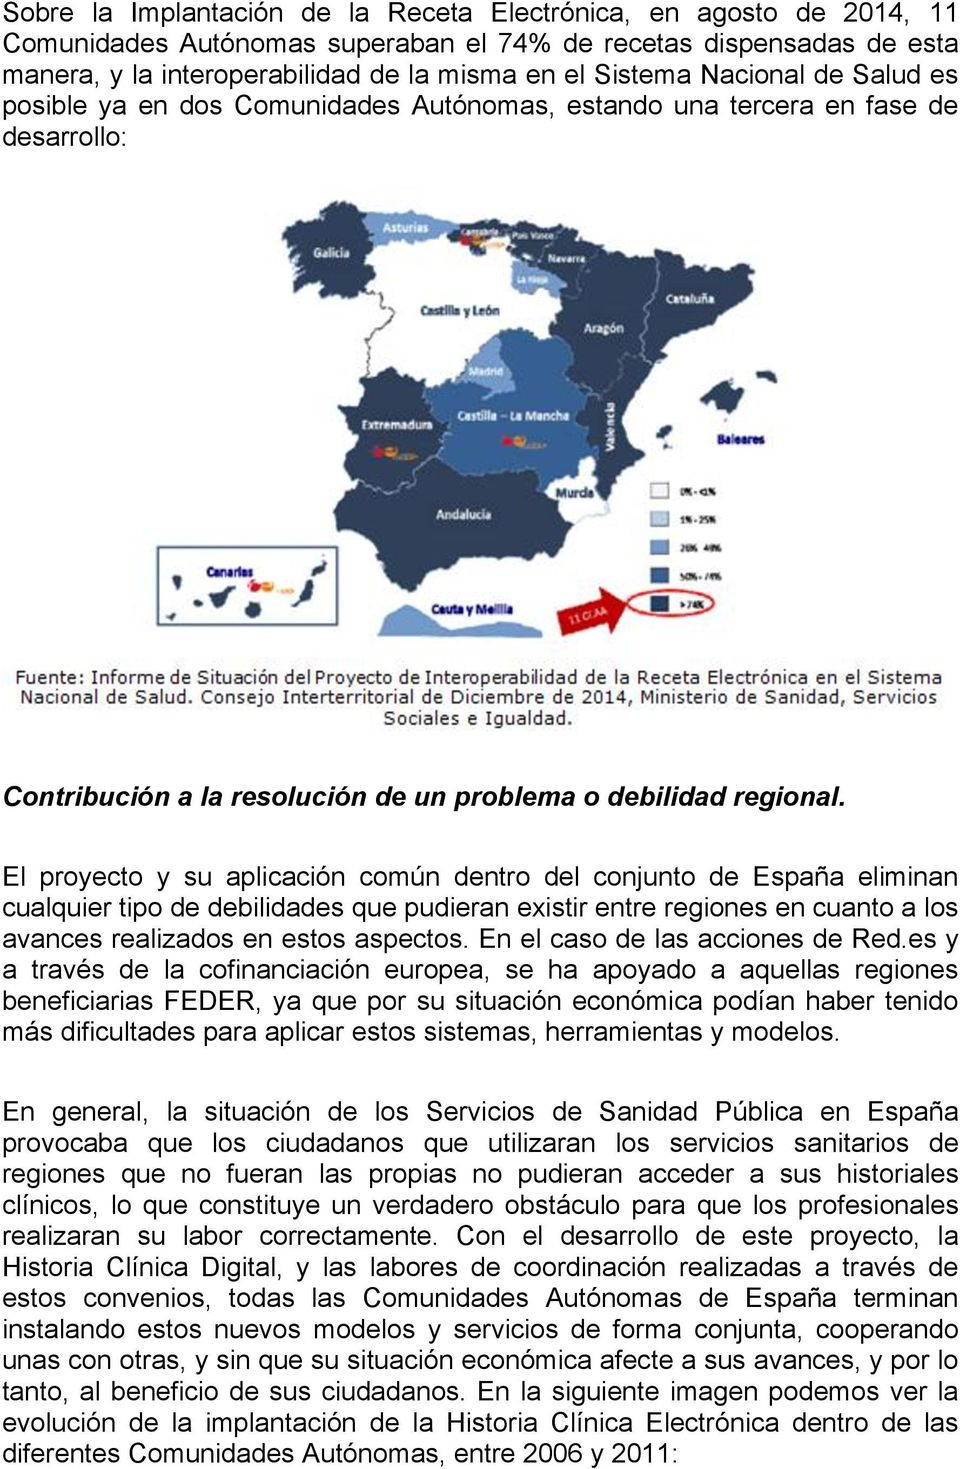 El proyecto y su aplicación común dentro del conjunto de España eliminan cualquier tipo de debilidades que pudieran existir entre regiones en cuanto a los avances realizados en estos aspectos.